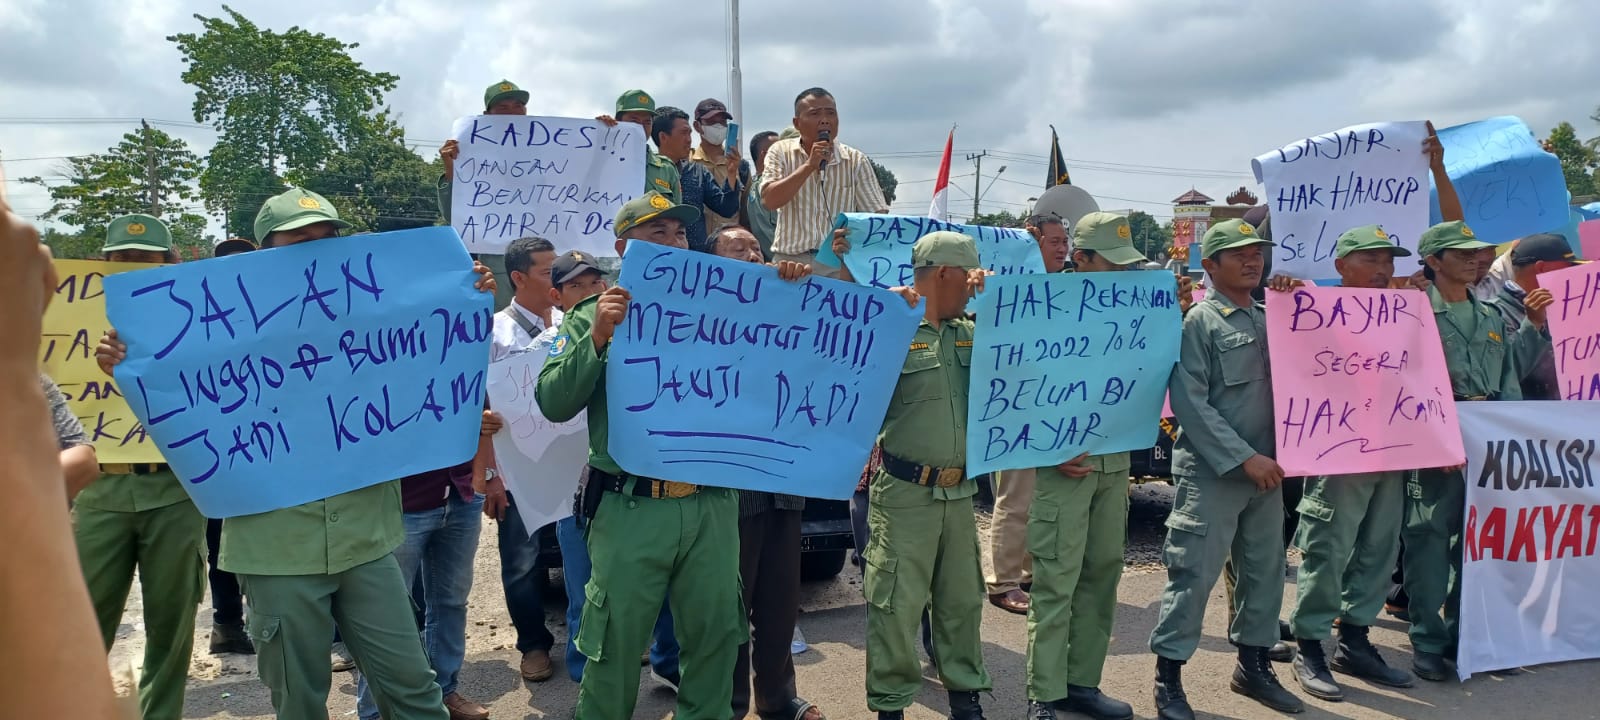 KT Dadi Gelar Demo, Tuntut Agar Insentif APD dan Dana Proyek di Lampung Timur Dibayar